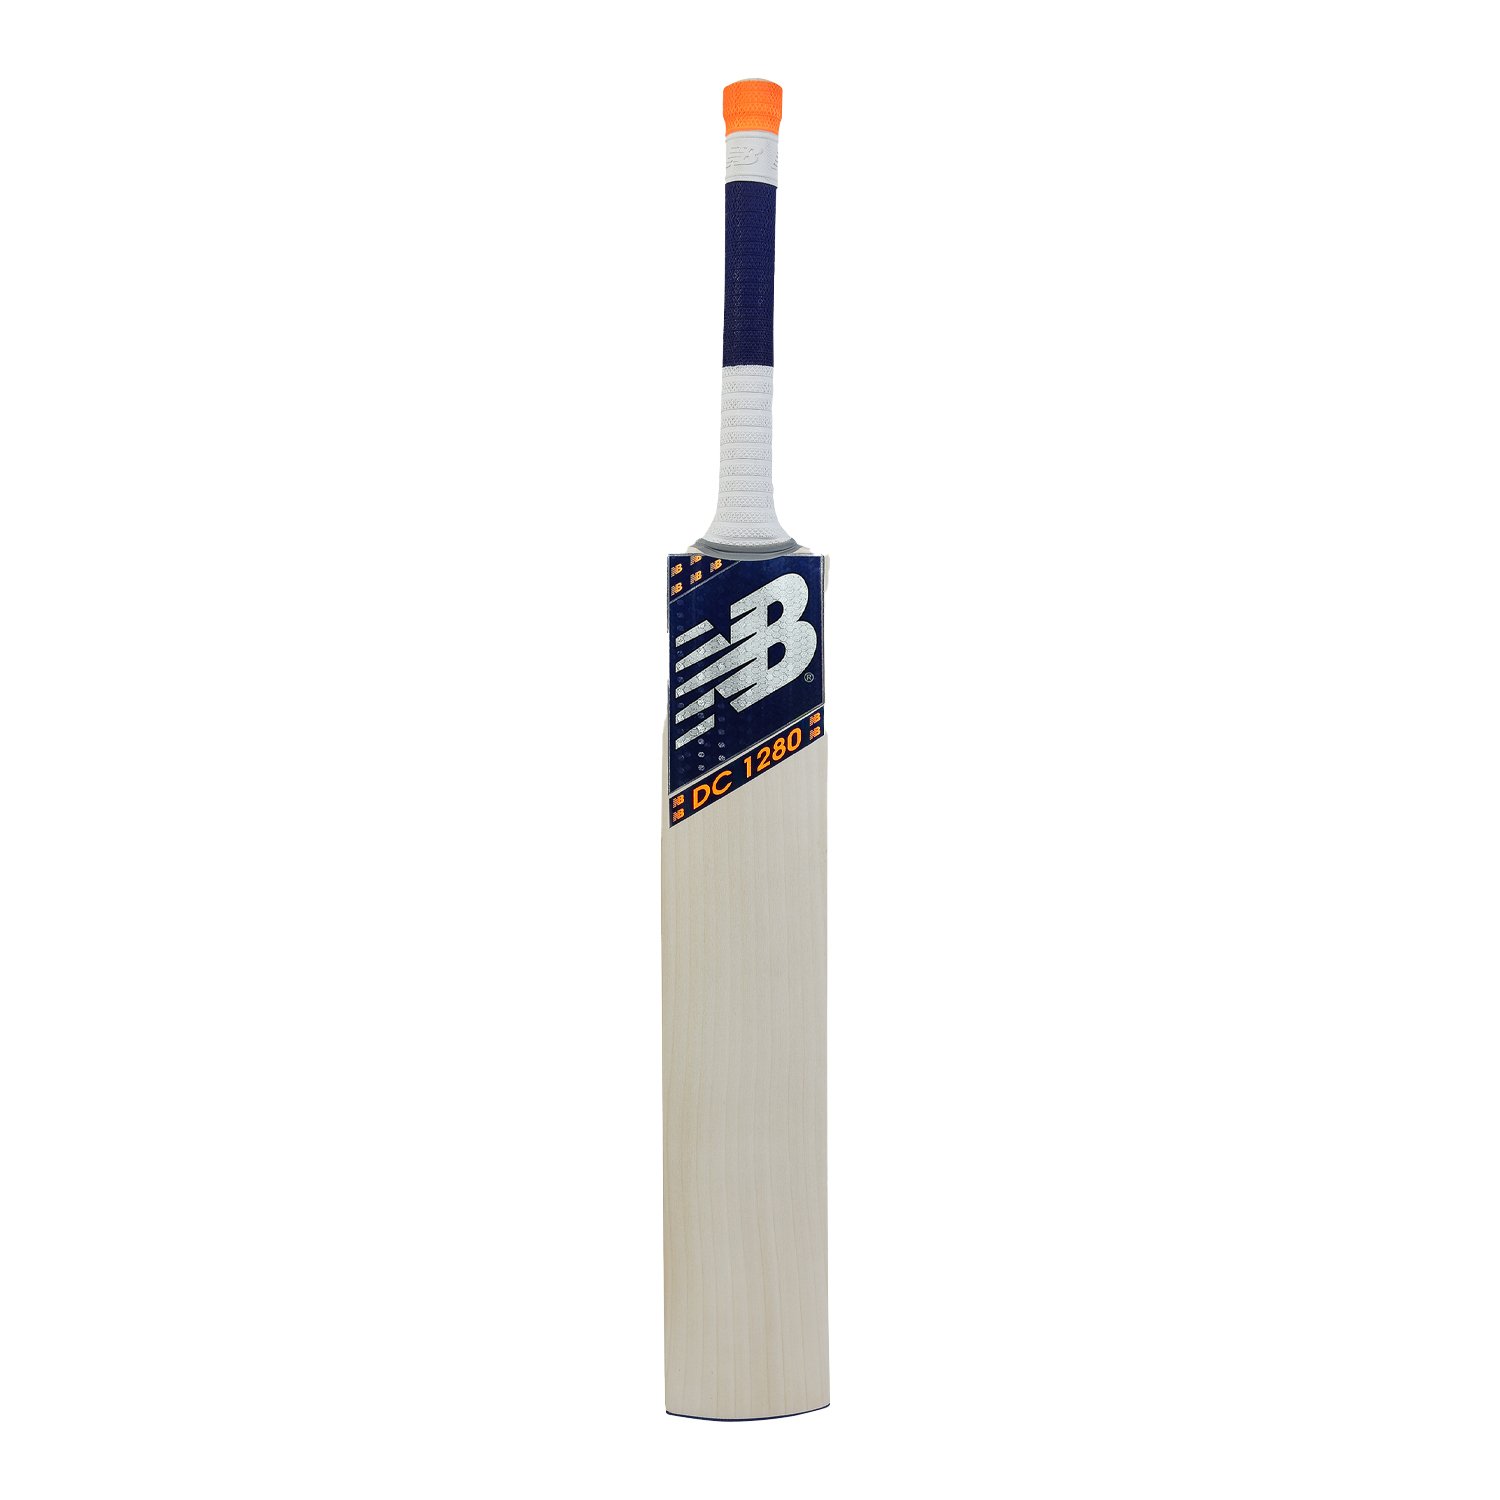 DC 1280 Bat (20/21) - Cricket Bats 